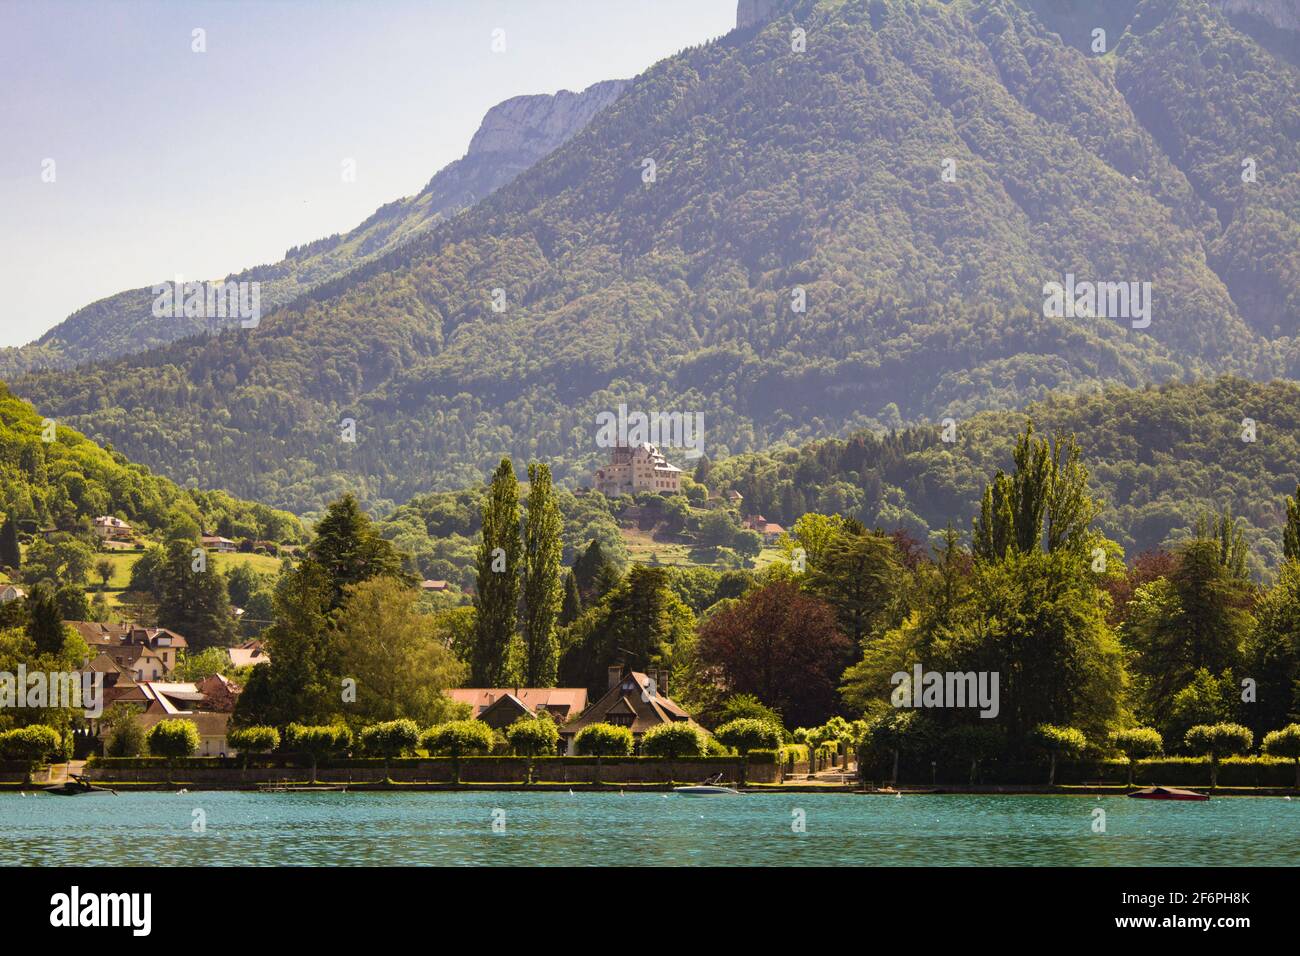 Belle vue sur les montagnes, le lac et le château par une journée ensoleillée. Menthon-Saint-Bernard. France. Banque D'Images